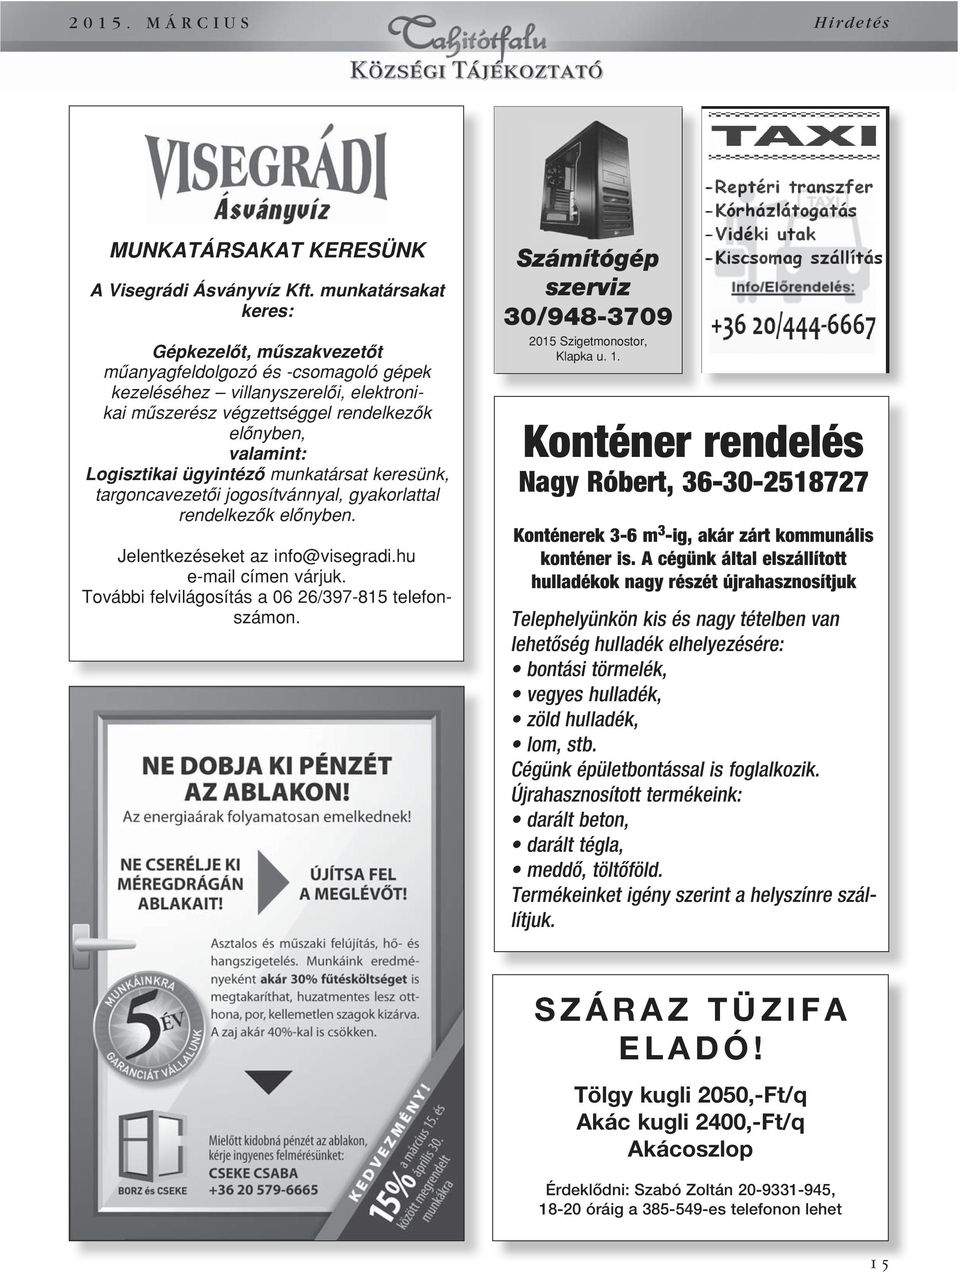 ügyintézô munkatársat keresünk, targoncavezetôi jogosítvánnyal, gyakorlattal rendelkezôk elônyben. Jelentkezéseket az info@visegradi.hu e-mail címen várjuk.